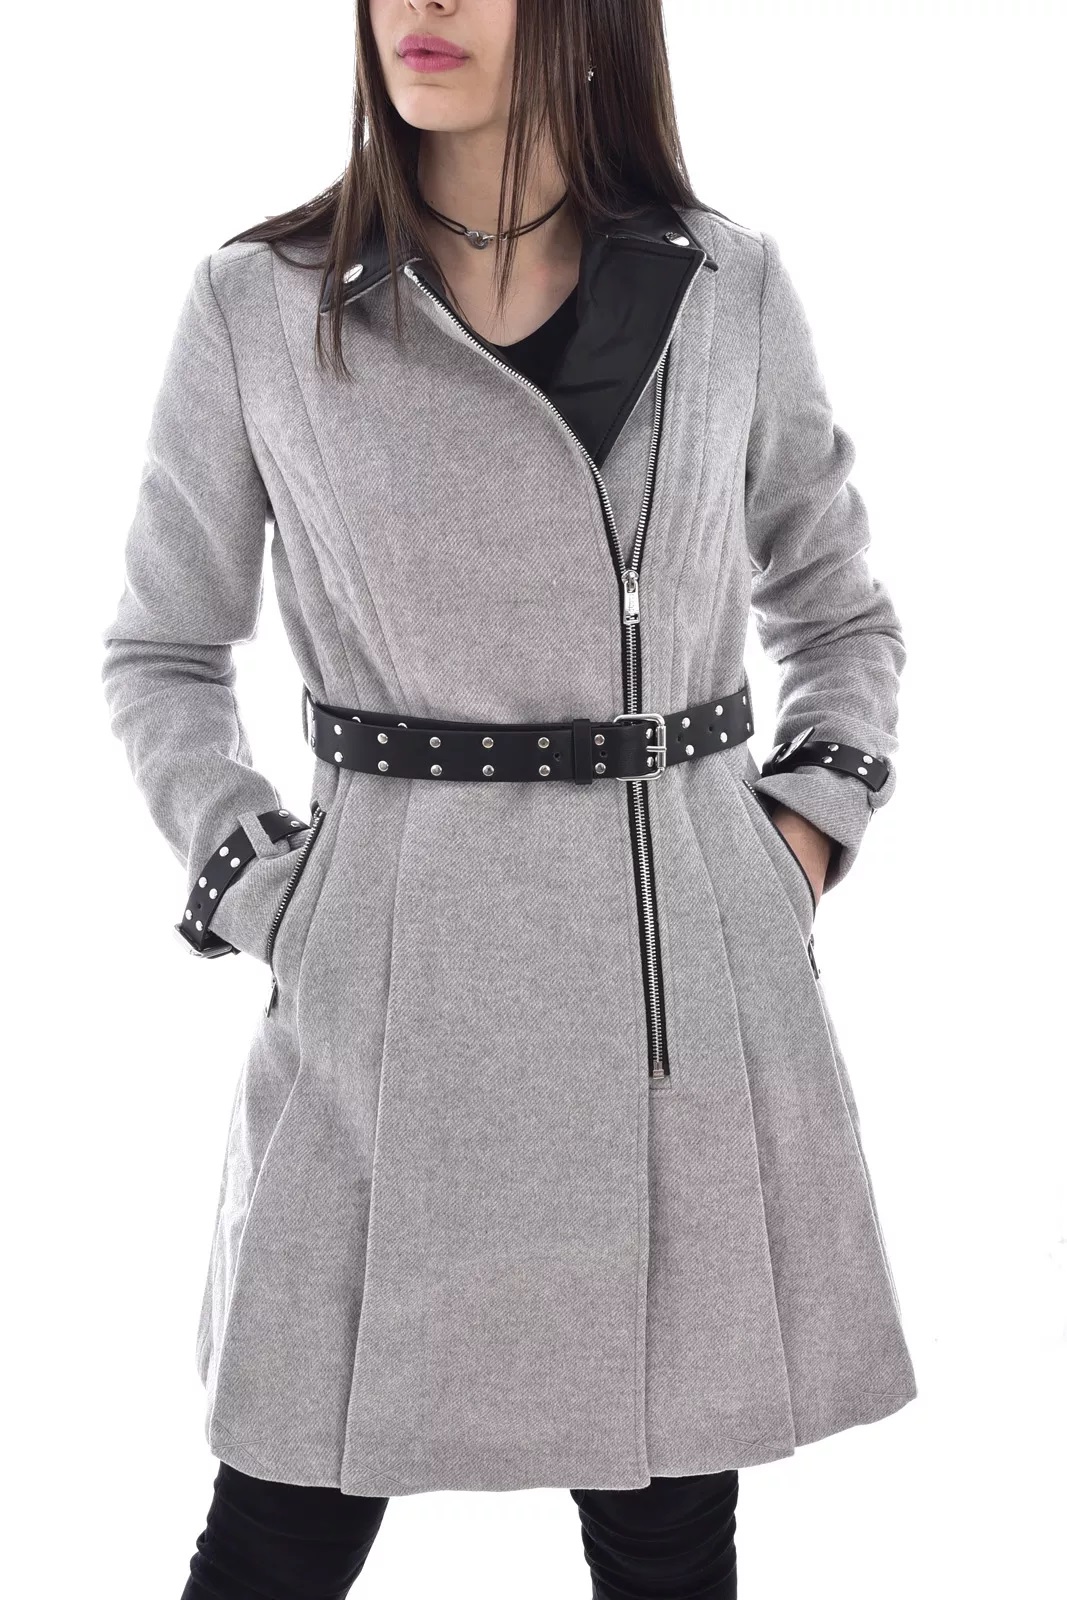 Guess dámský kabát šedý melír s černou Velikost: M